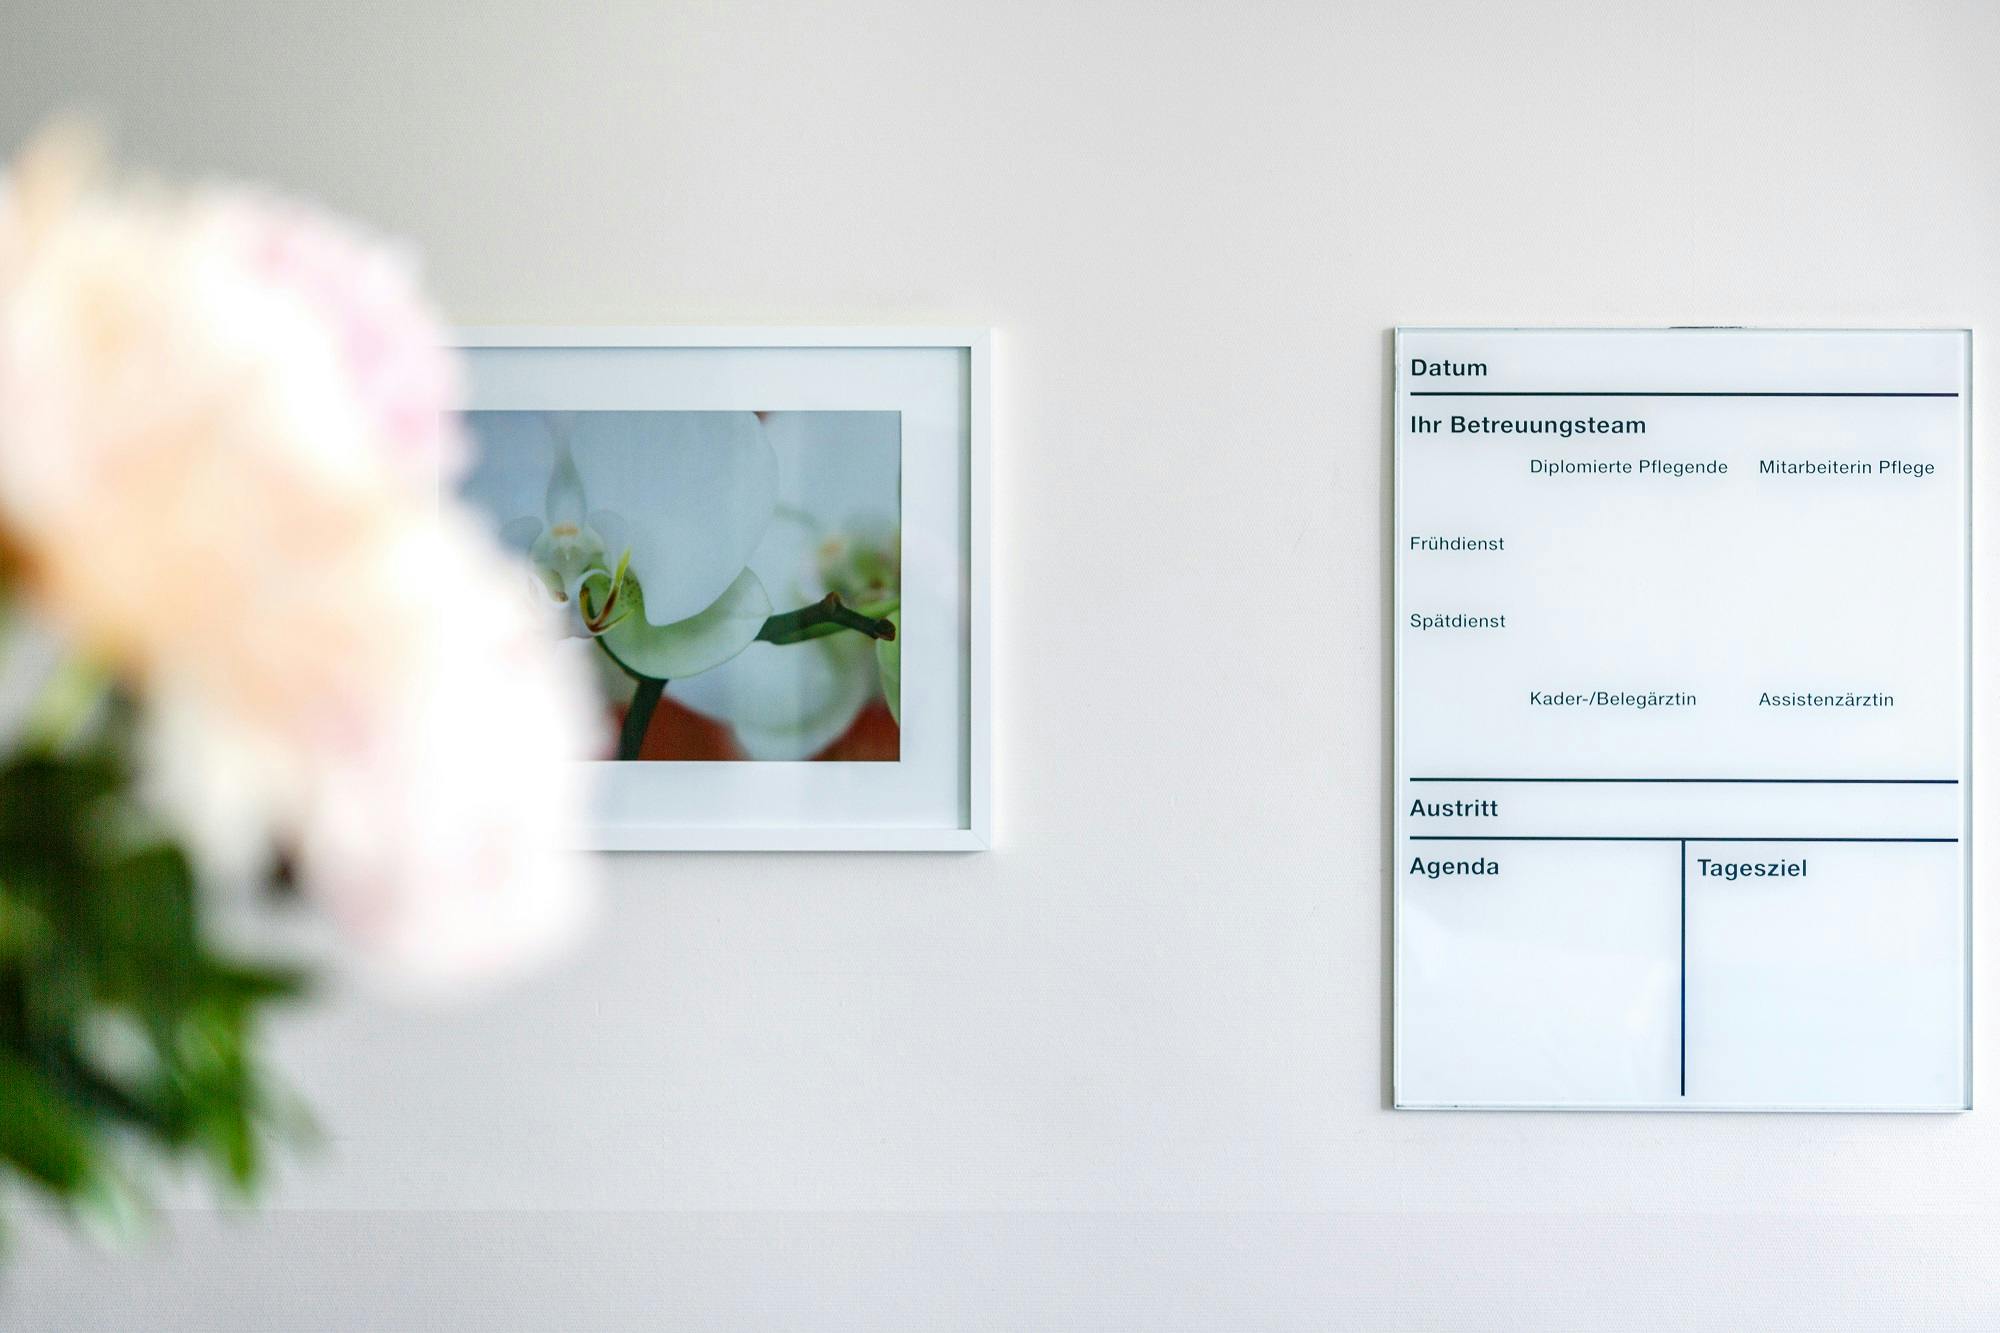 Alternativbeschreibung: Wand mit gerahmtem Bild einer Blüte neben einer Informationstafel in einem Innenraum.